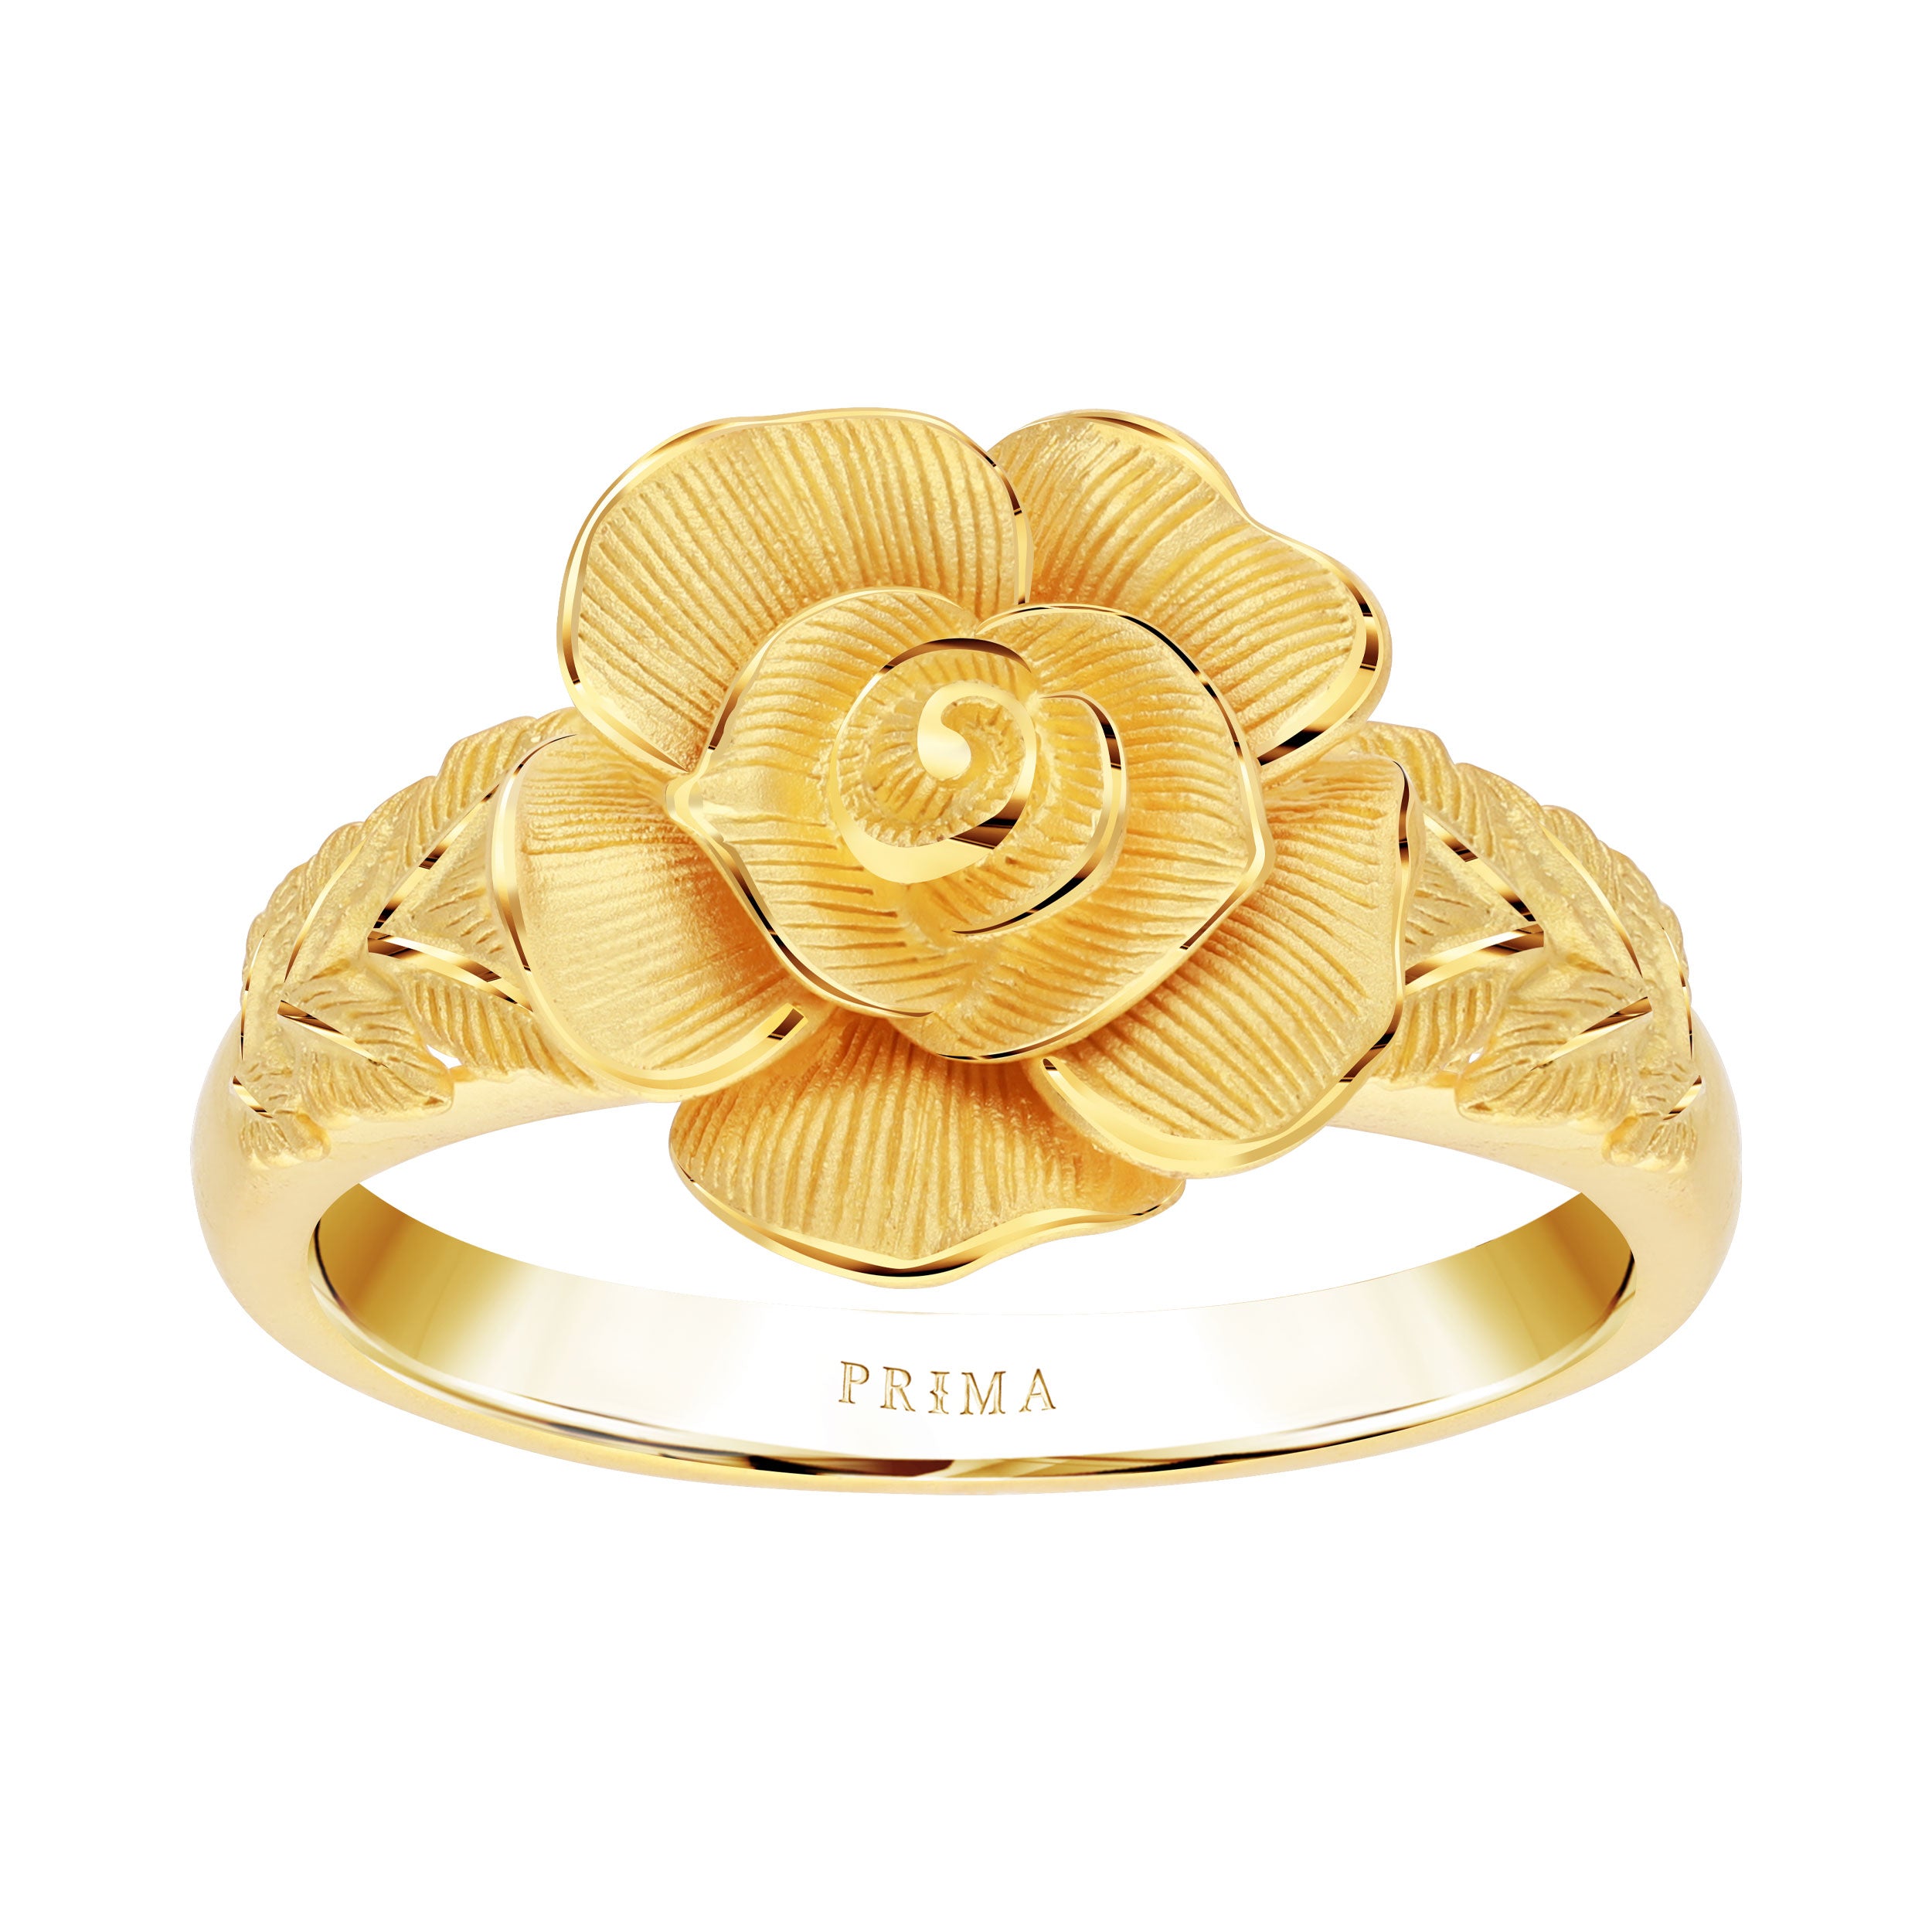 wedding gold ring designs gold ring designs,gold ring design,latest gold  ring designs,gold ring,gold | Gold ring designs, Ring designs, Engagement  rings on finger